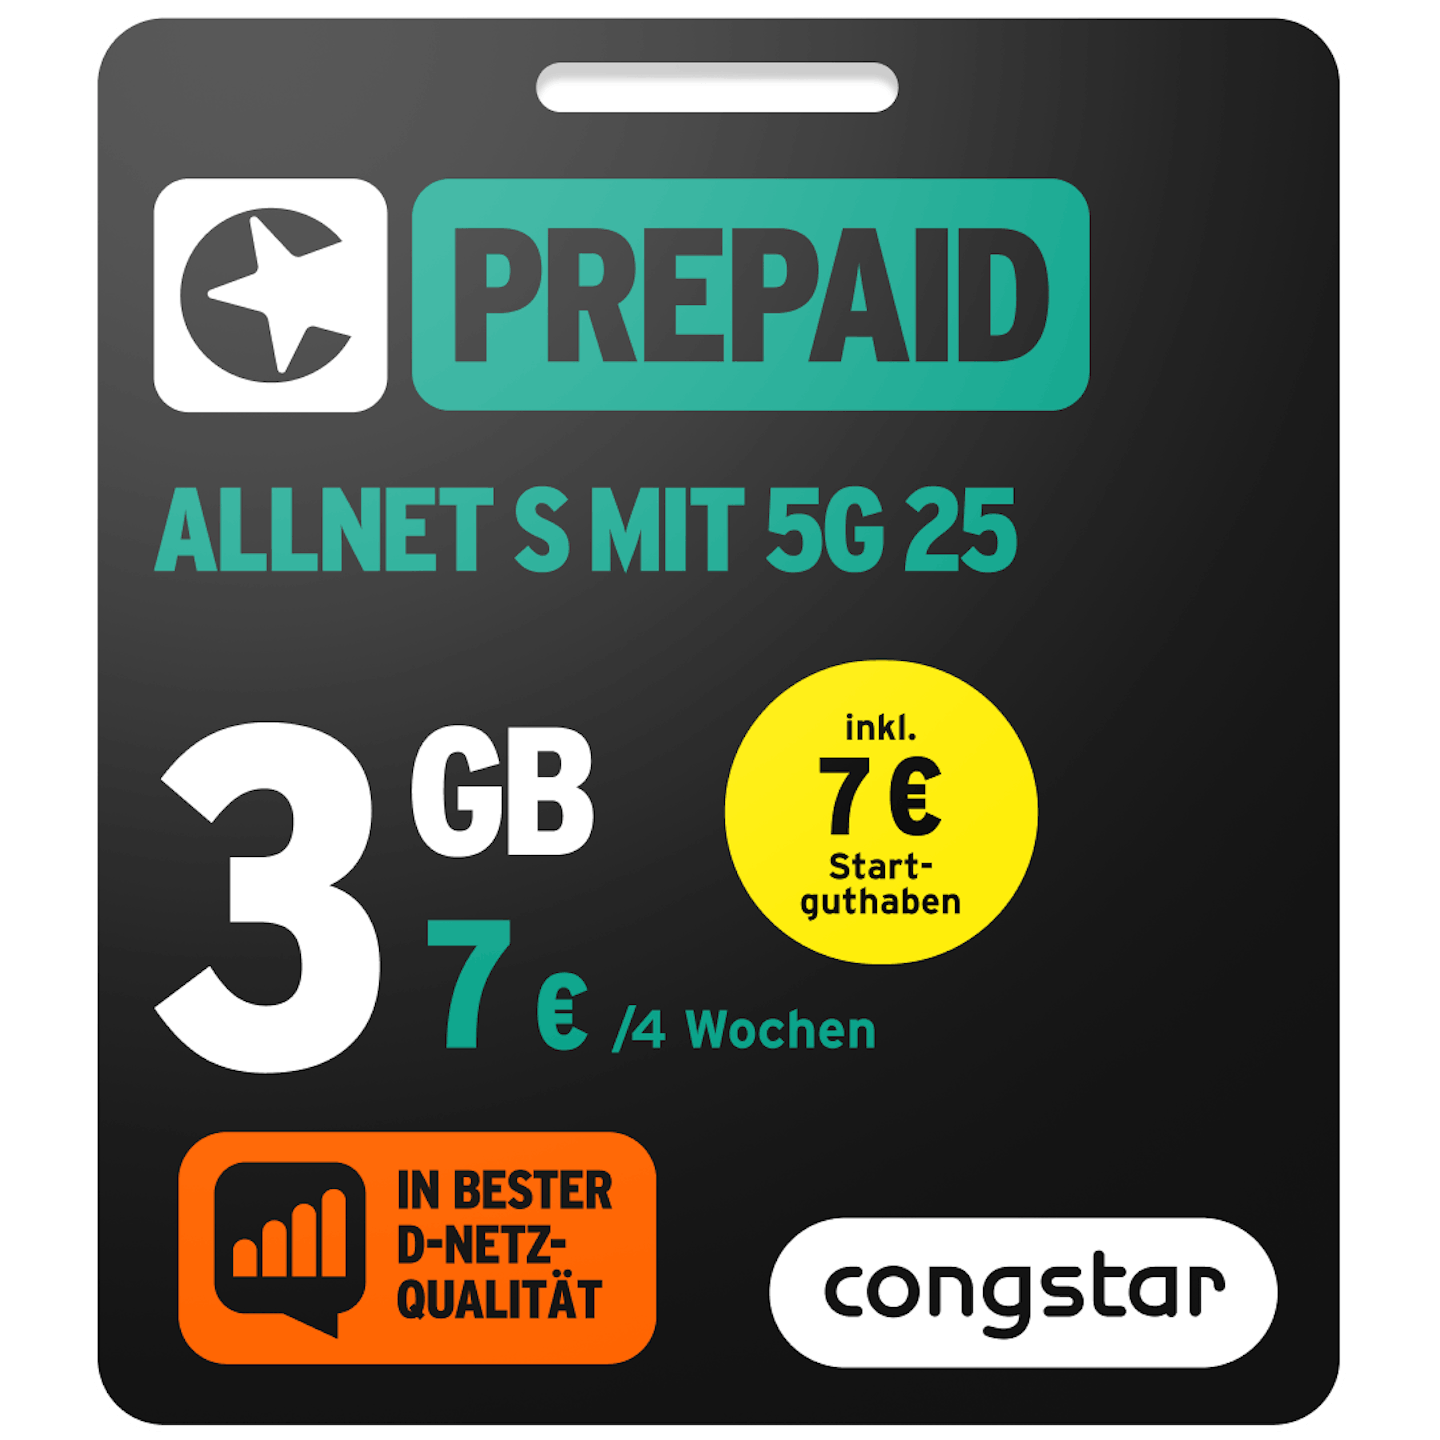 Bild der Verpackung des Prepaid Allnet S mit 5G 25